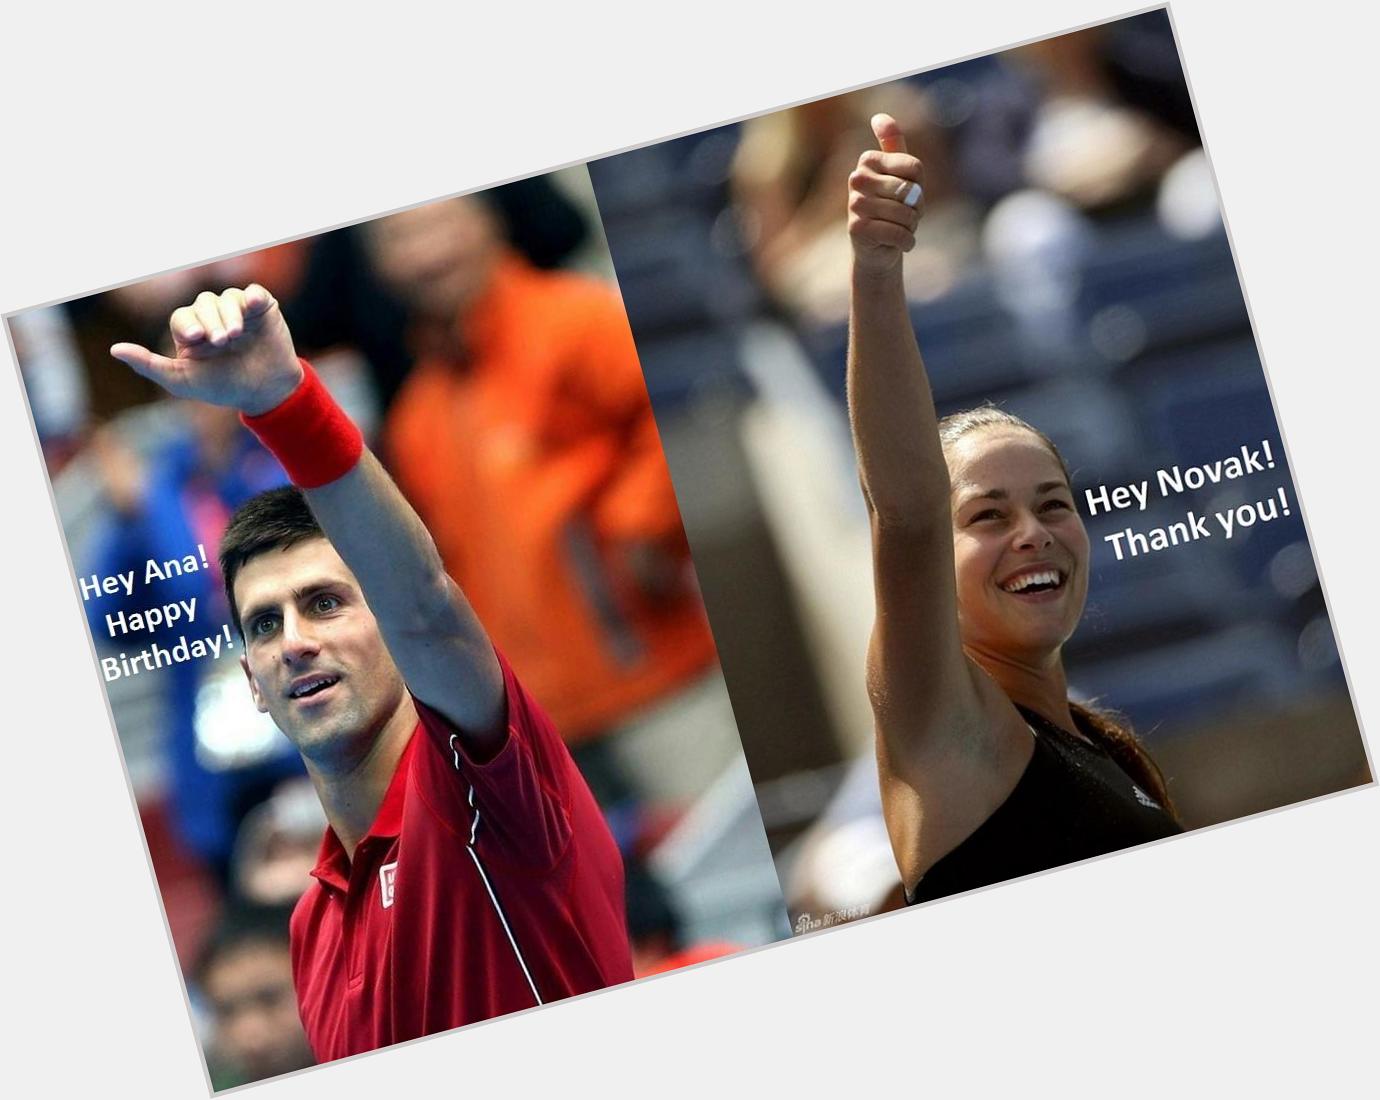 Novak Djokovic: "Hey Ana! Happy Birthday!" 
Ana Ivanovic: "Hey Novak! Thank you!"       